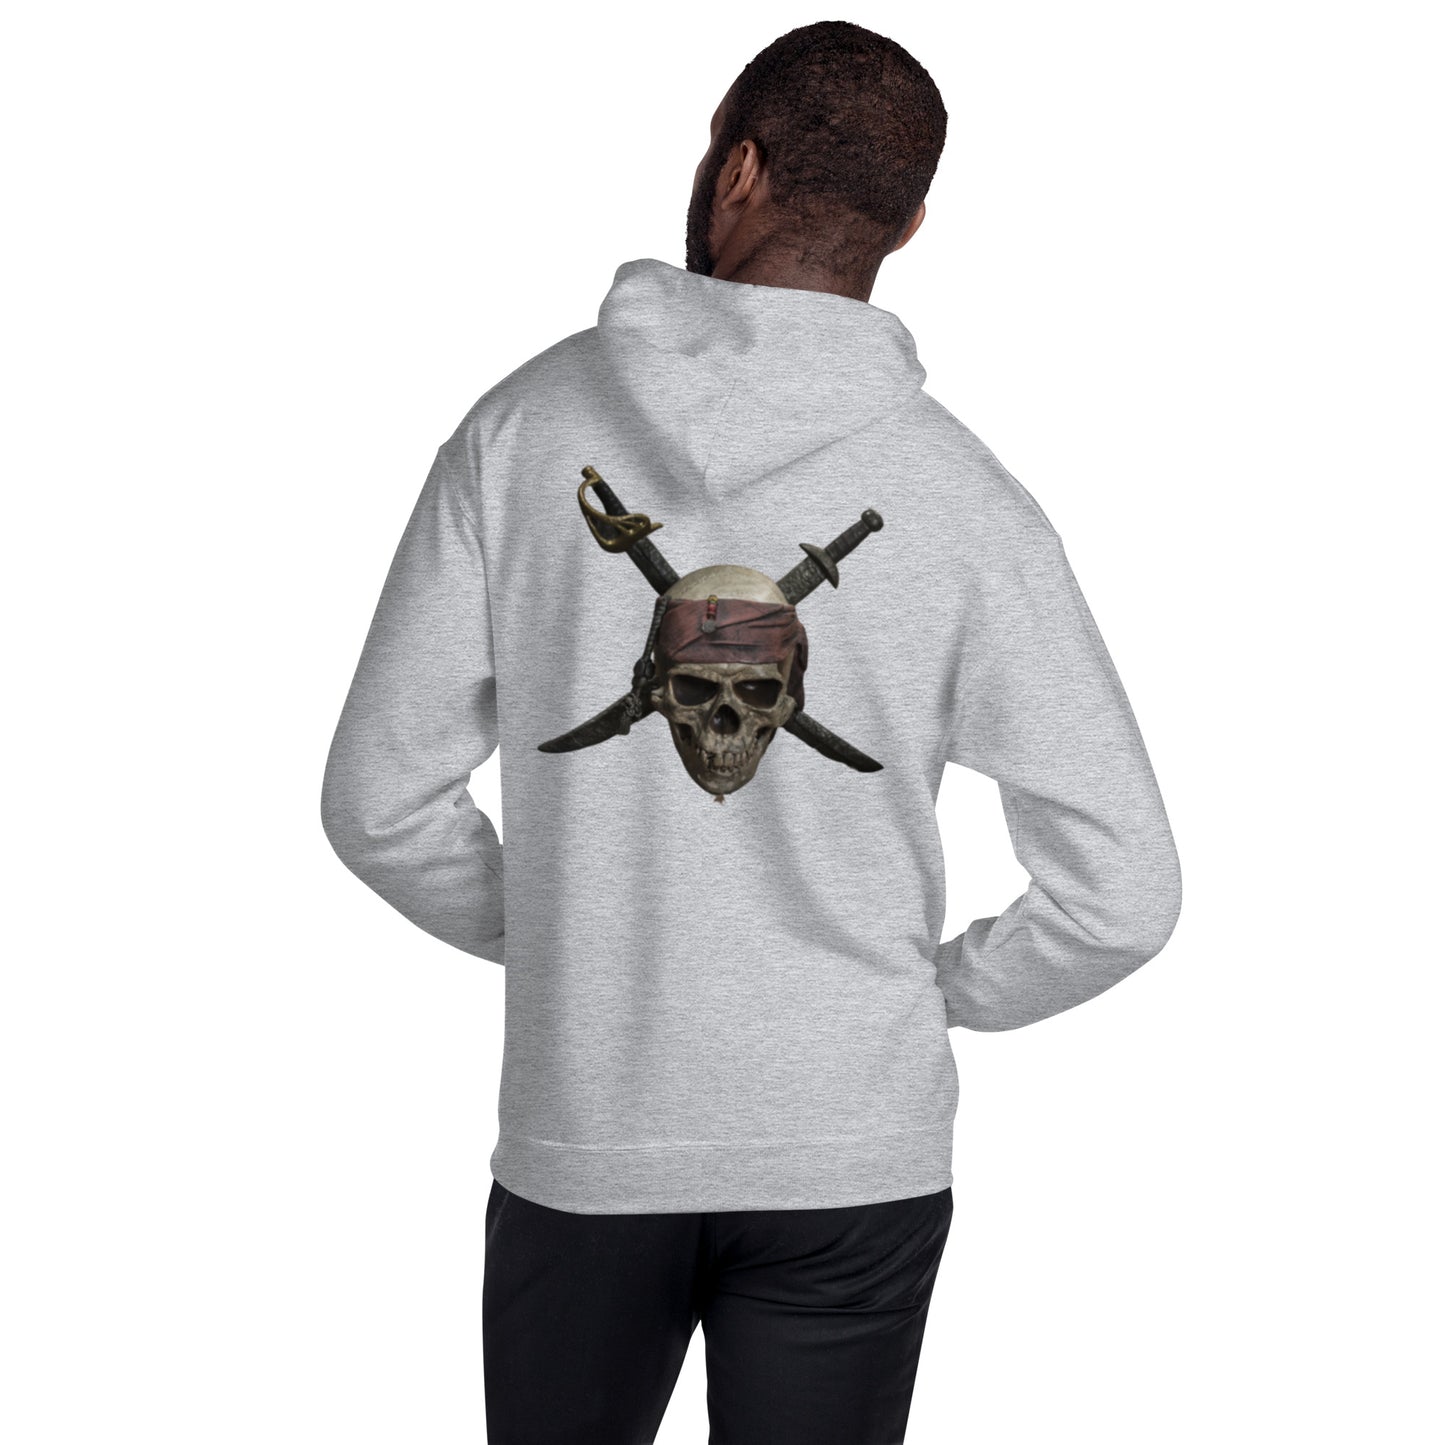 Skull & Swords Pirate Unisex Hoodie